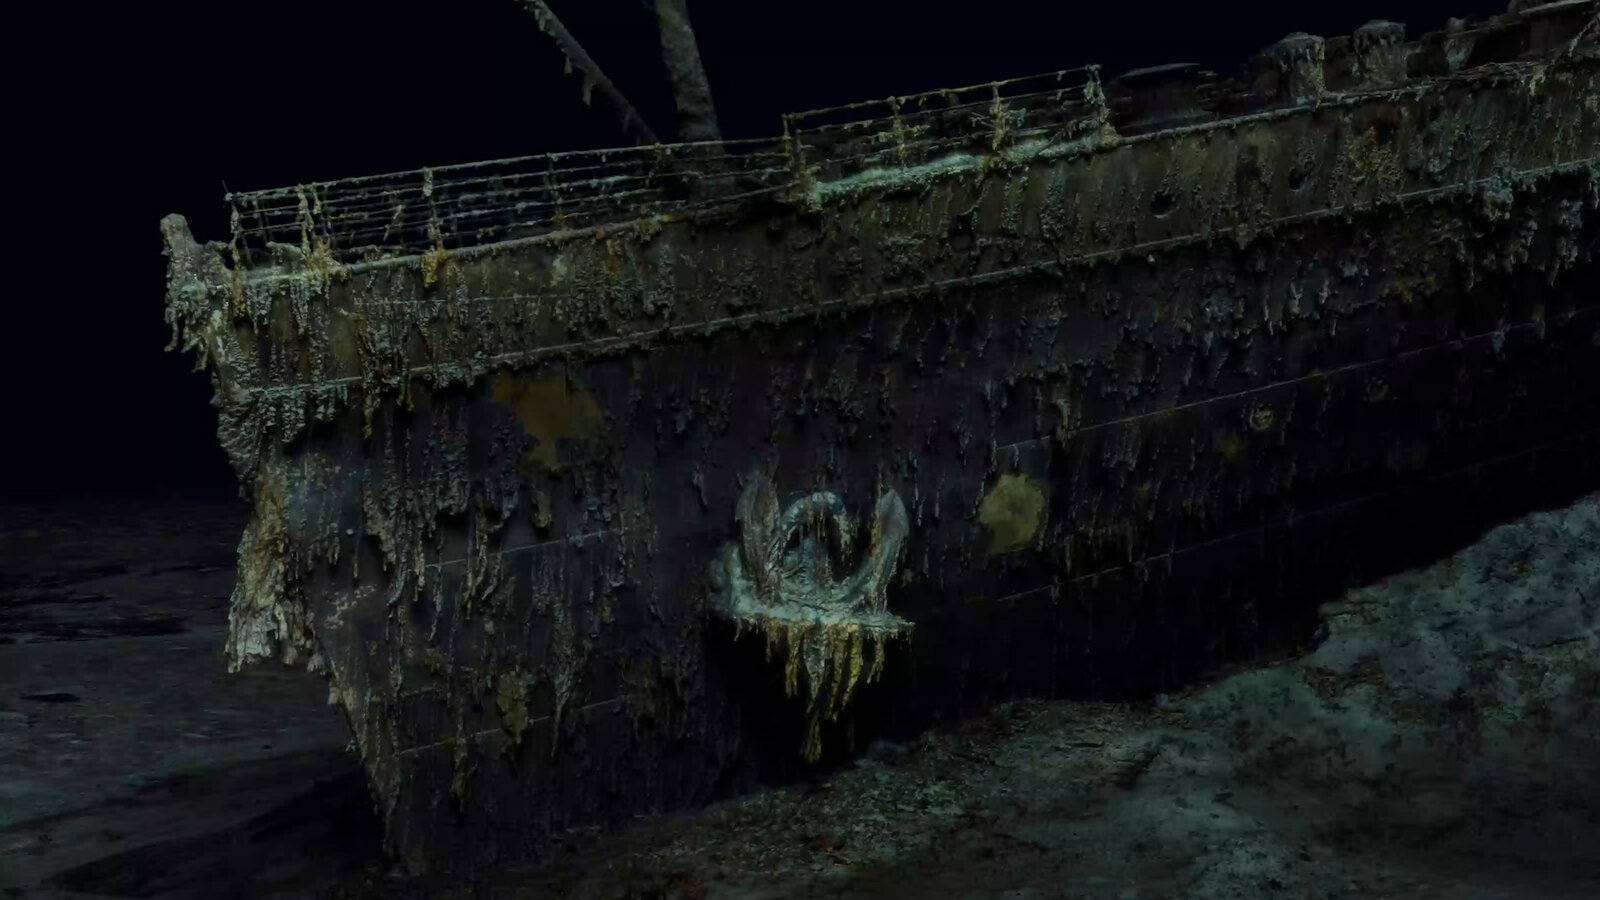 Briga judicial: EUA tentam impedir nova expedição aos destroços do Titanic